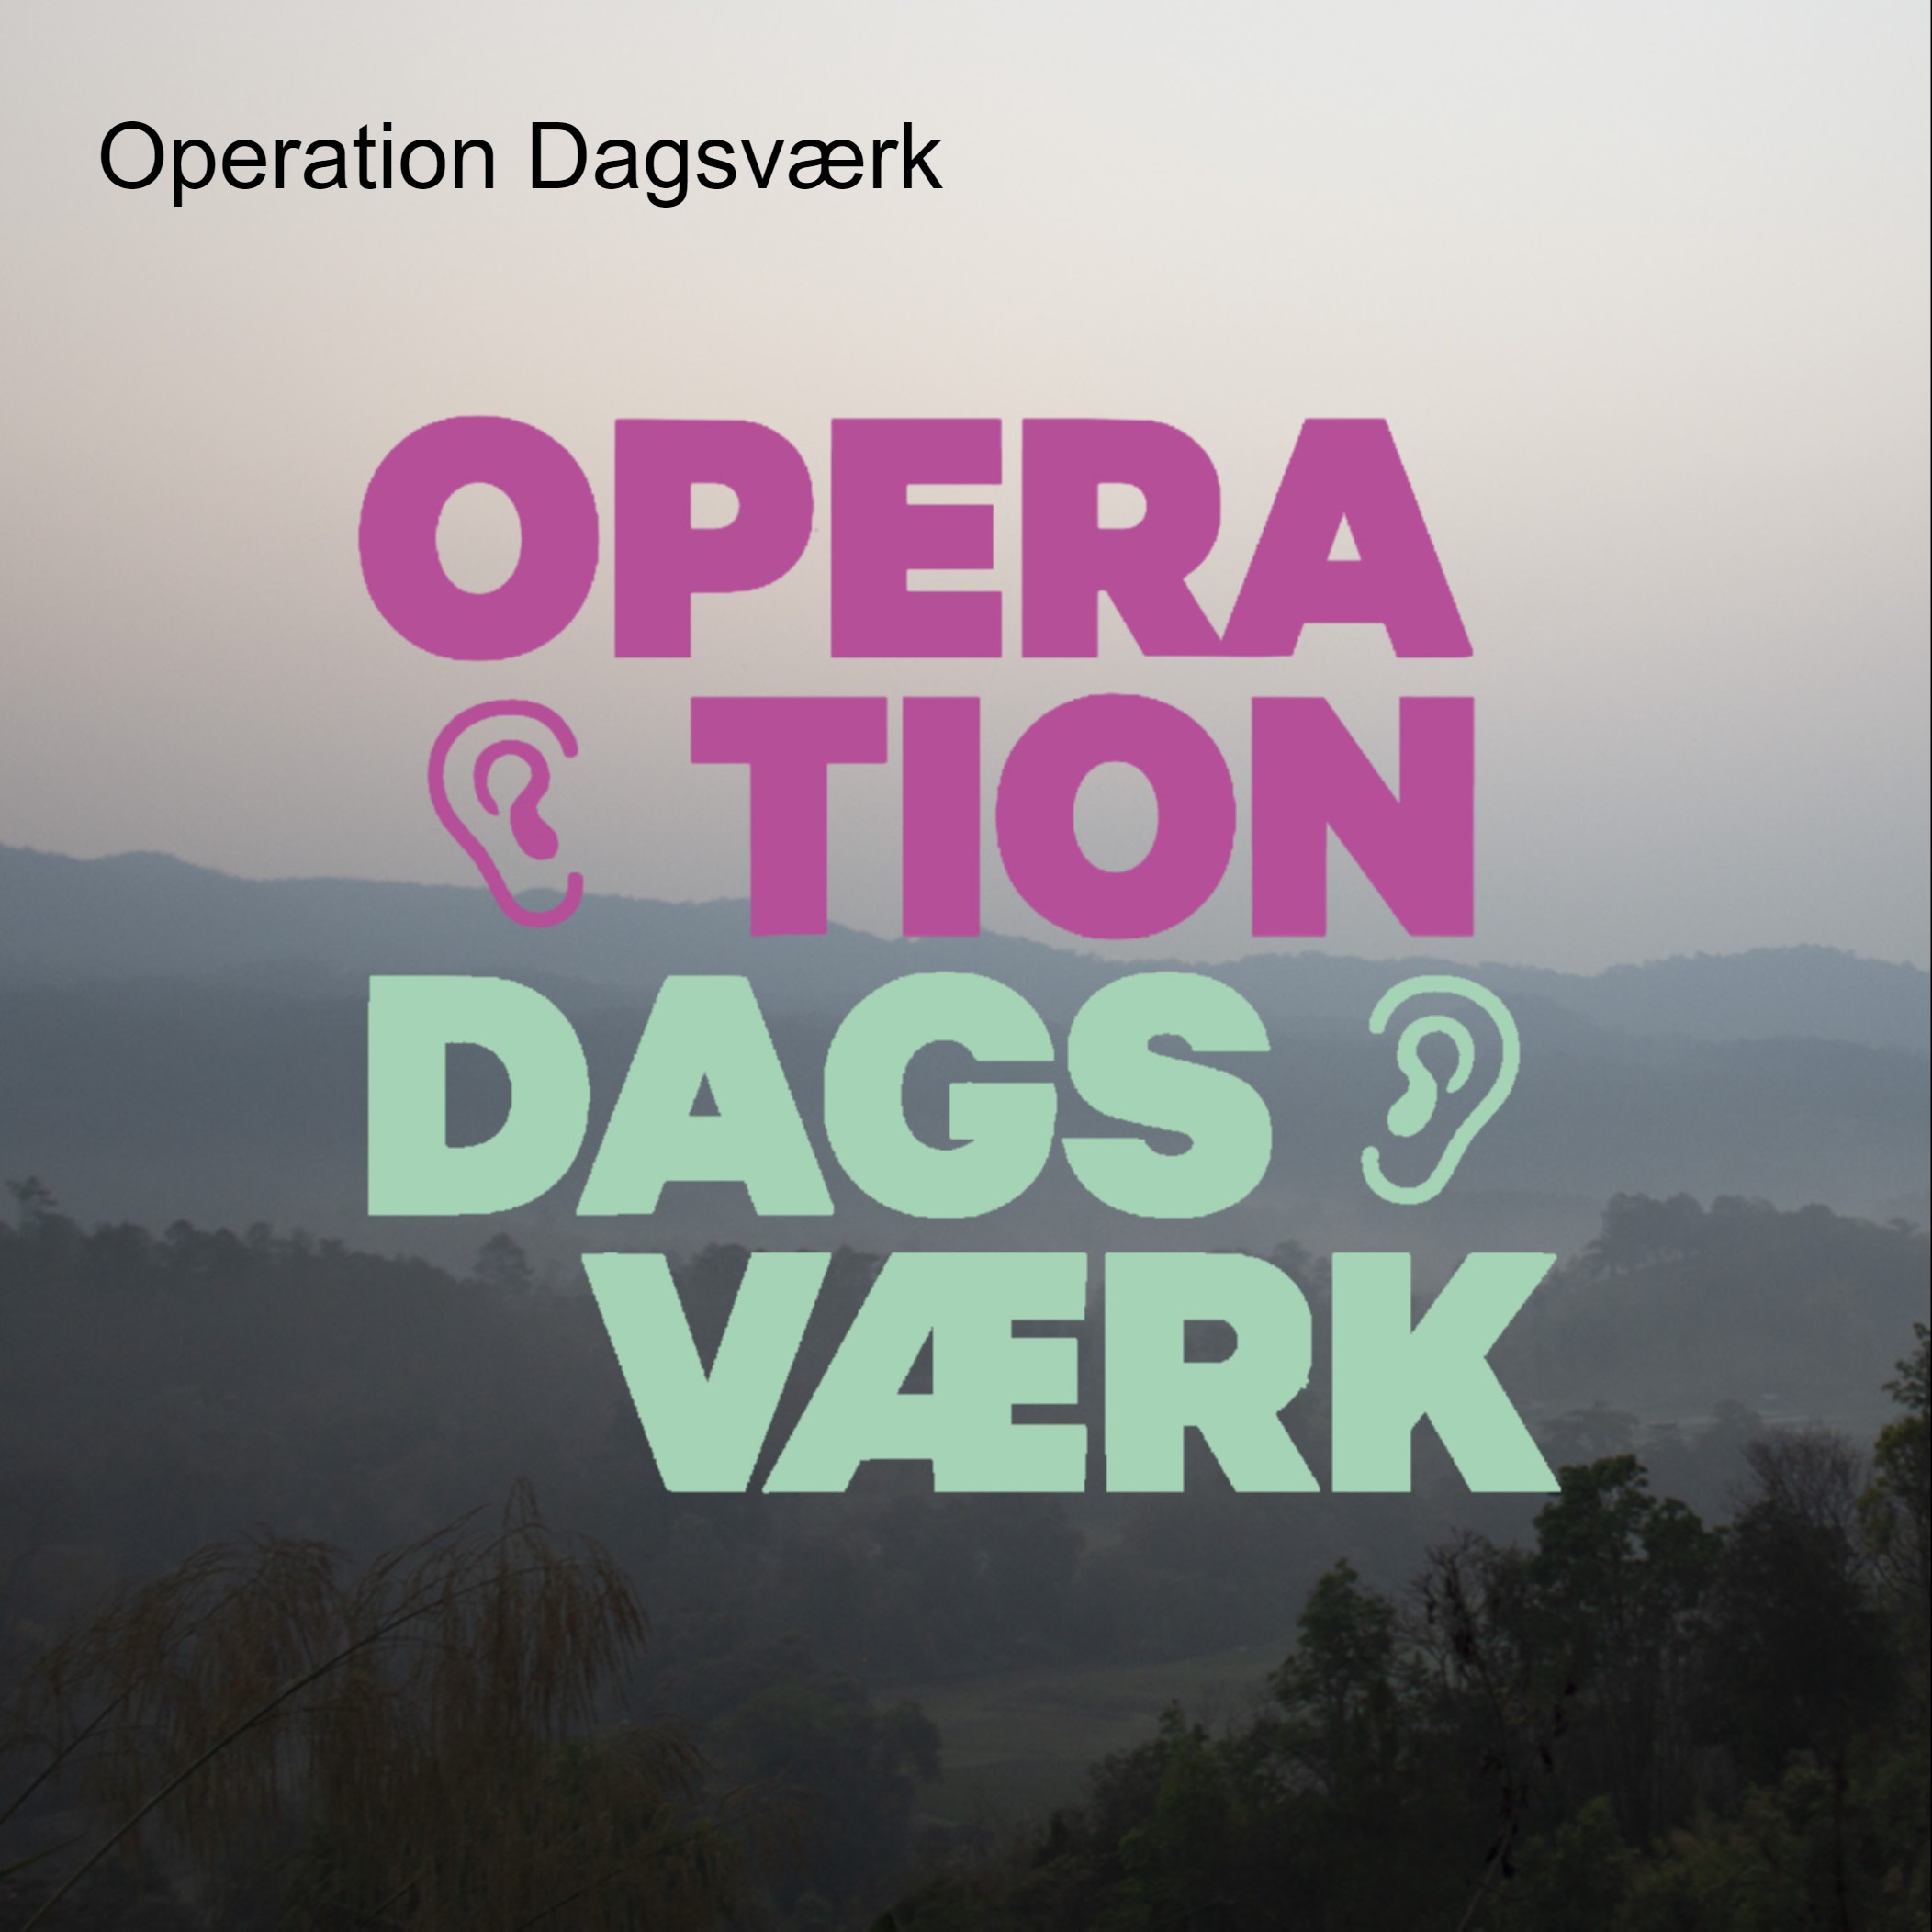 Operation Dagsværk